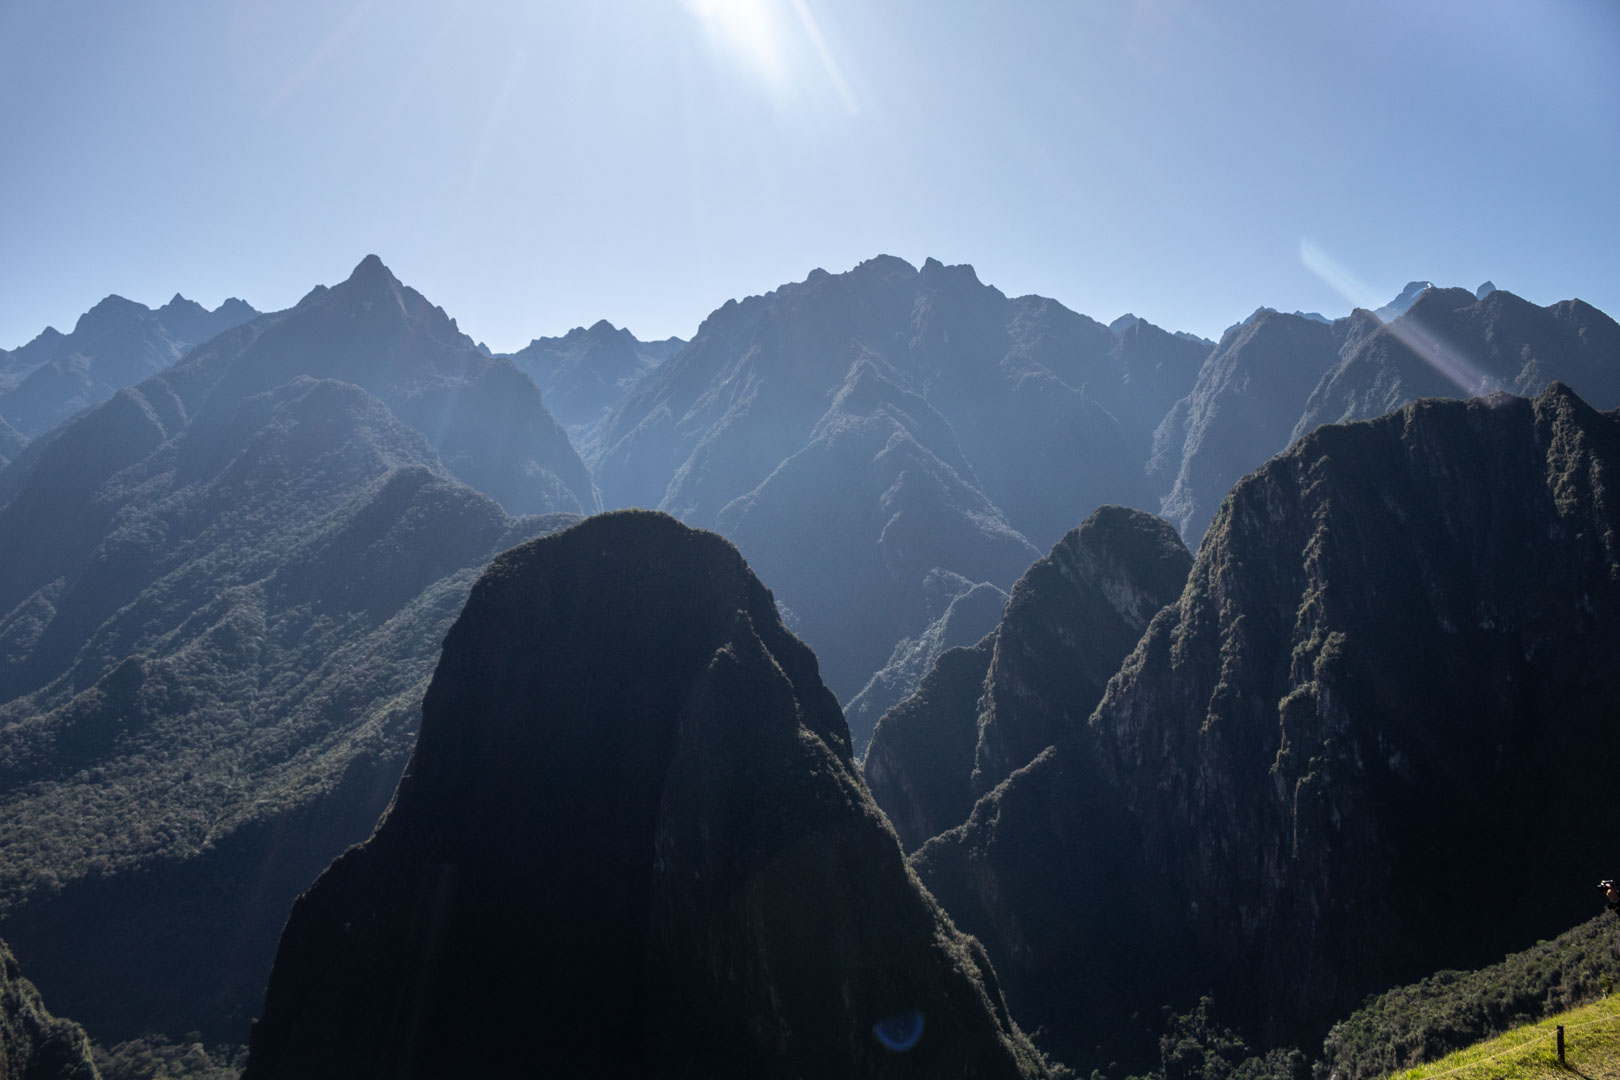 Aguas Calientes mountains, Peru